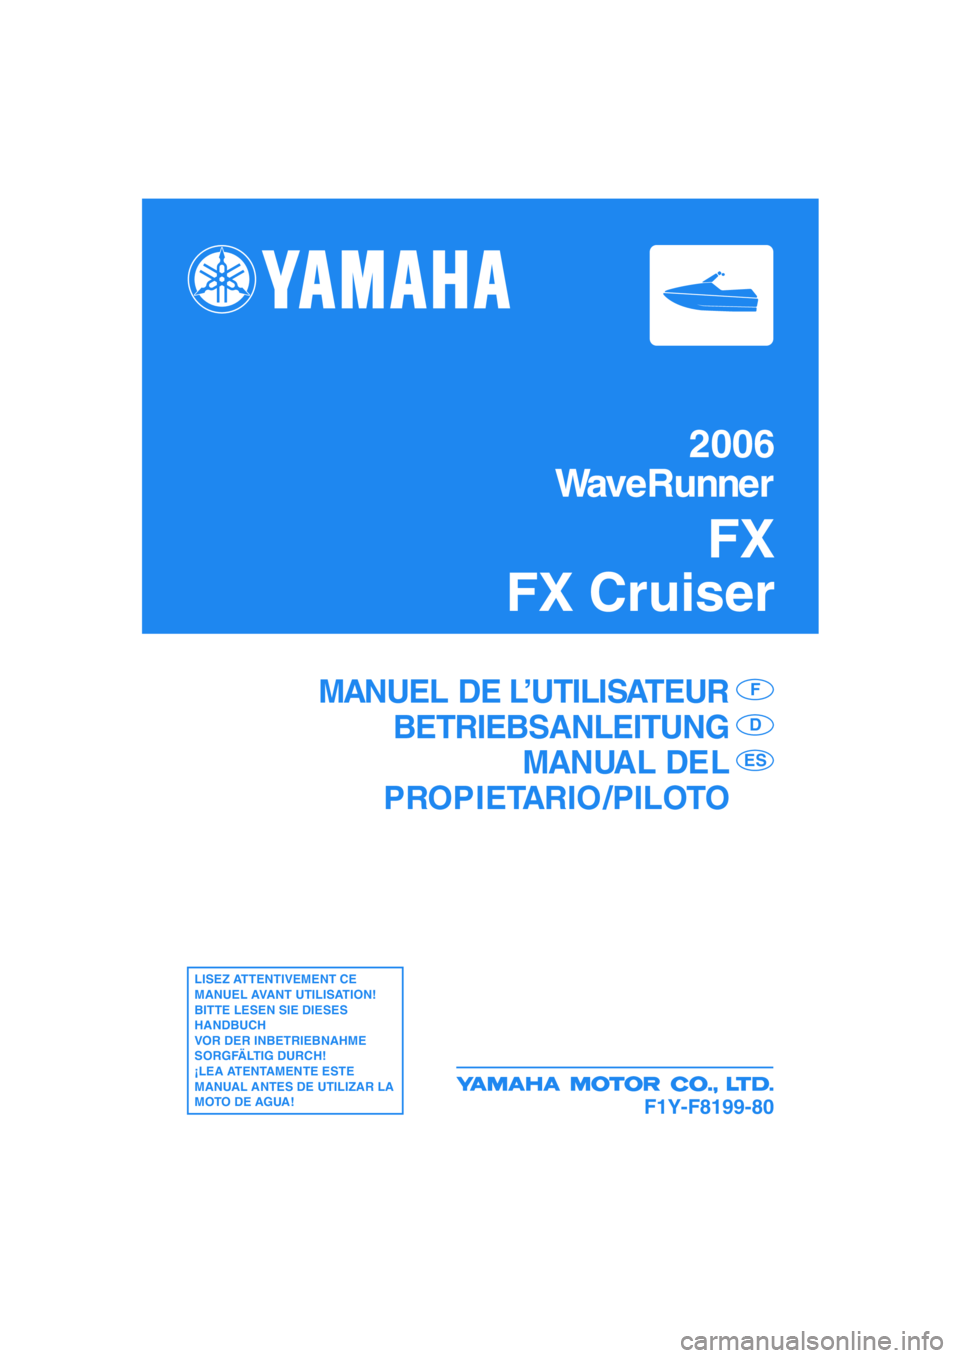 YAMAHA FX 2006  Manuale de Empleo (in Spanish) 2006
WaveRunner
FX
FX Cruiser
F1Y-F8199-80
MANUEL DE L’UTILISATEUR
BETRIEBSANLEITUNG
MANUAL DEL
PROPIETARIO /PILOTOF
D
ES
LISEZ ATTENTIVEMENT CE 
MANUEL AVANT UTILISATION!
BITTE LESEN SIE DIESES 
HA